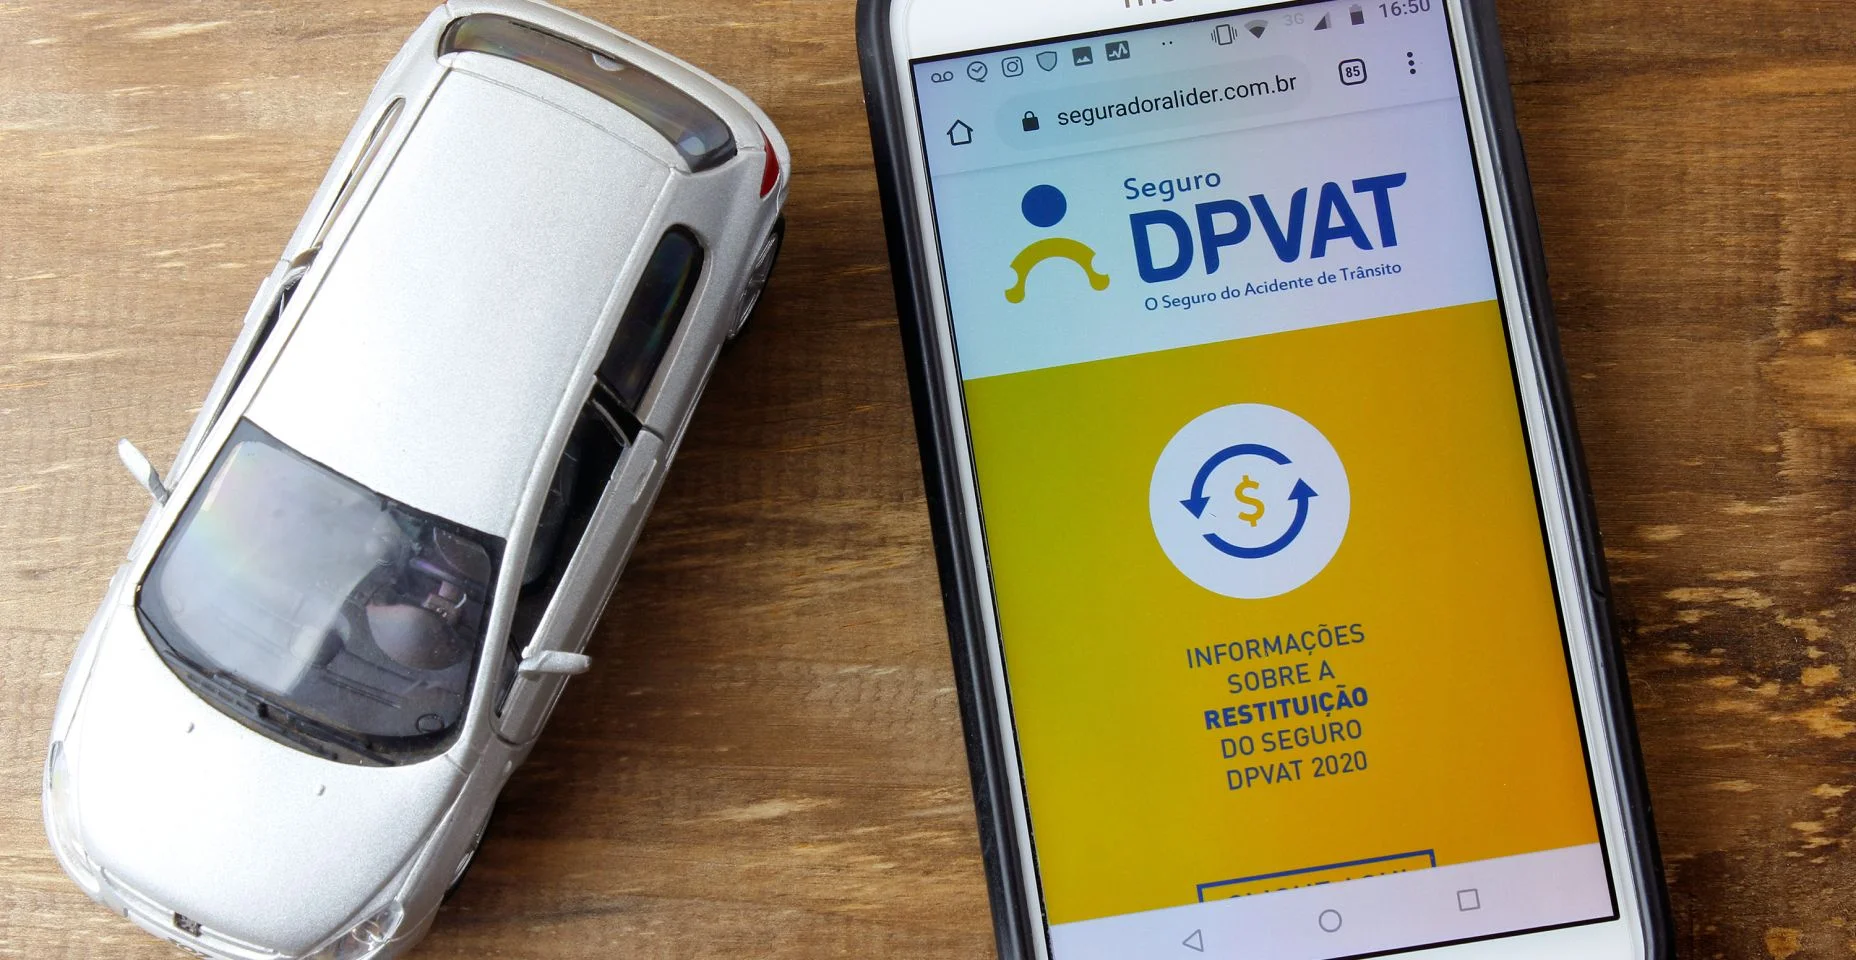 Logotipo DPVAT na tela do Smartphone. É um seguro que indeniza vítimas de acidentes de trânsito no Brasil.